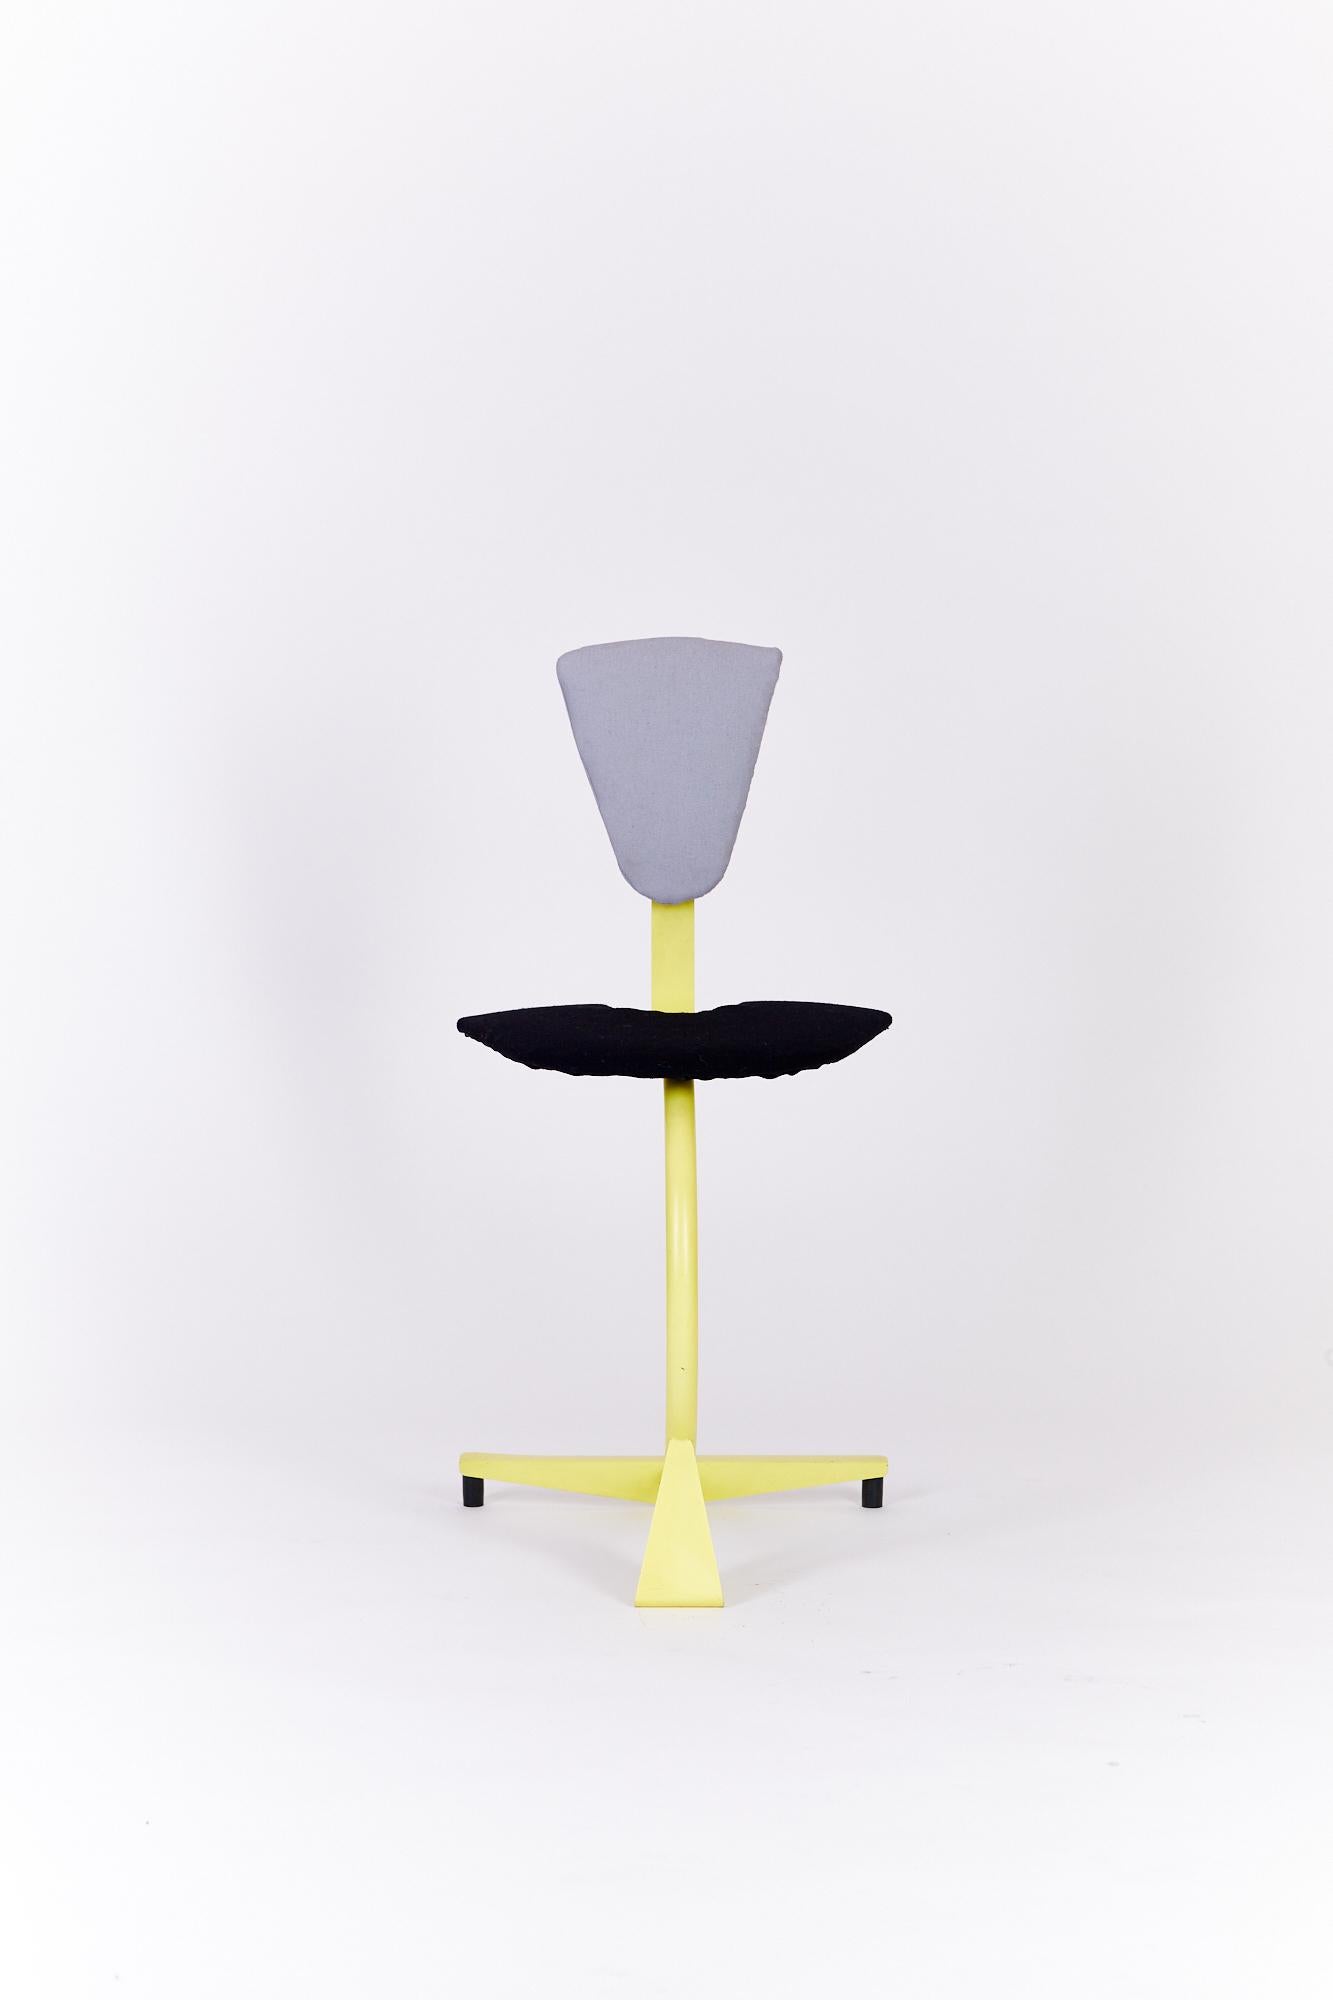 Postmoderner gelber Stuhl, entworfen in den 1980er Jahren. Er besteht aus einer Metallstruktur mit einer Sitz- und Rückenpolsterung.

Unbekannter Designer
